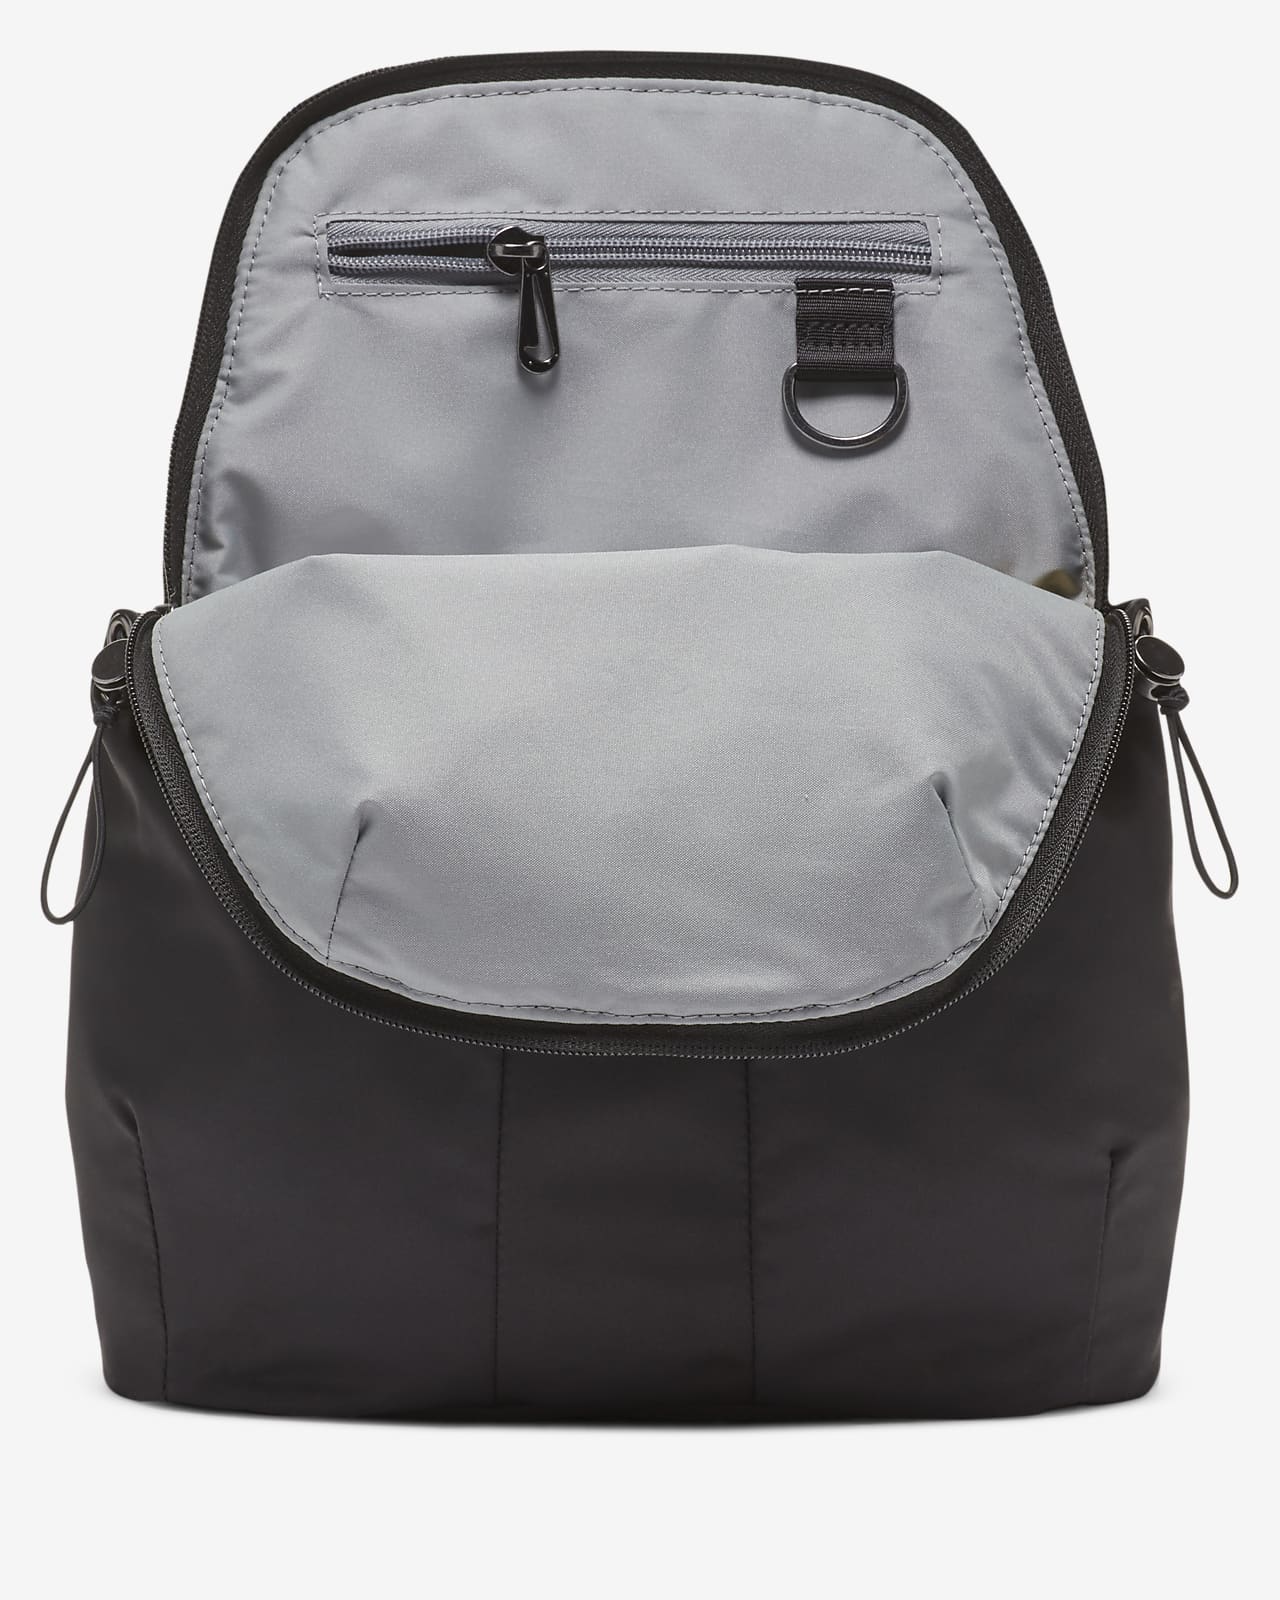 Nike Sportswear Futura Luxe Women's Mini Backpack (10L